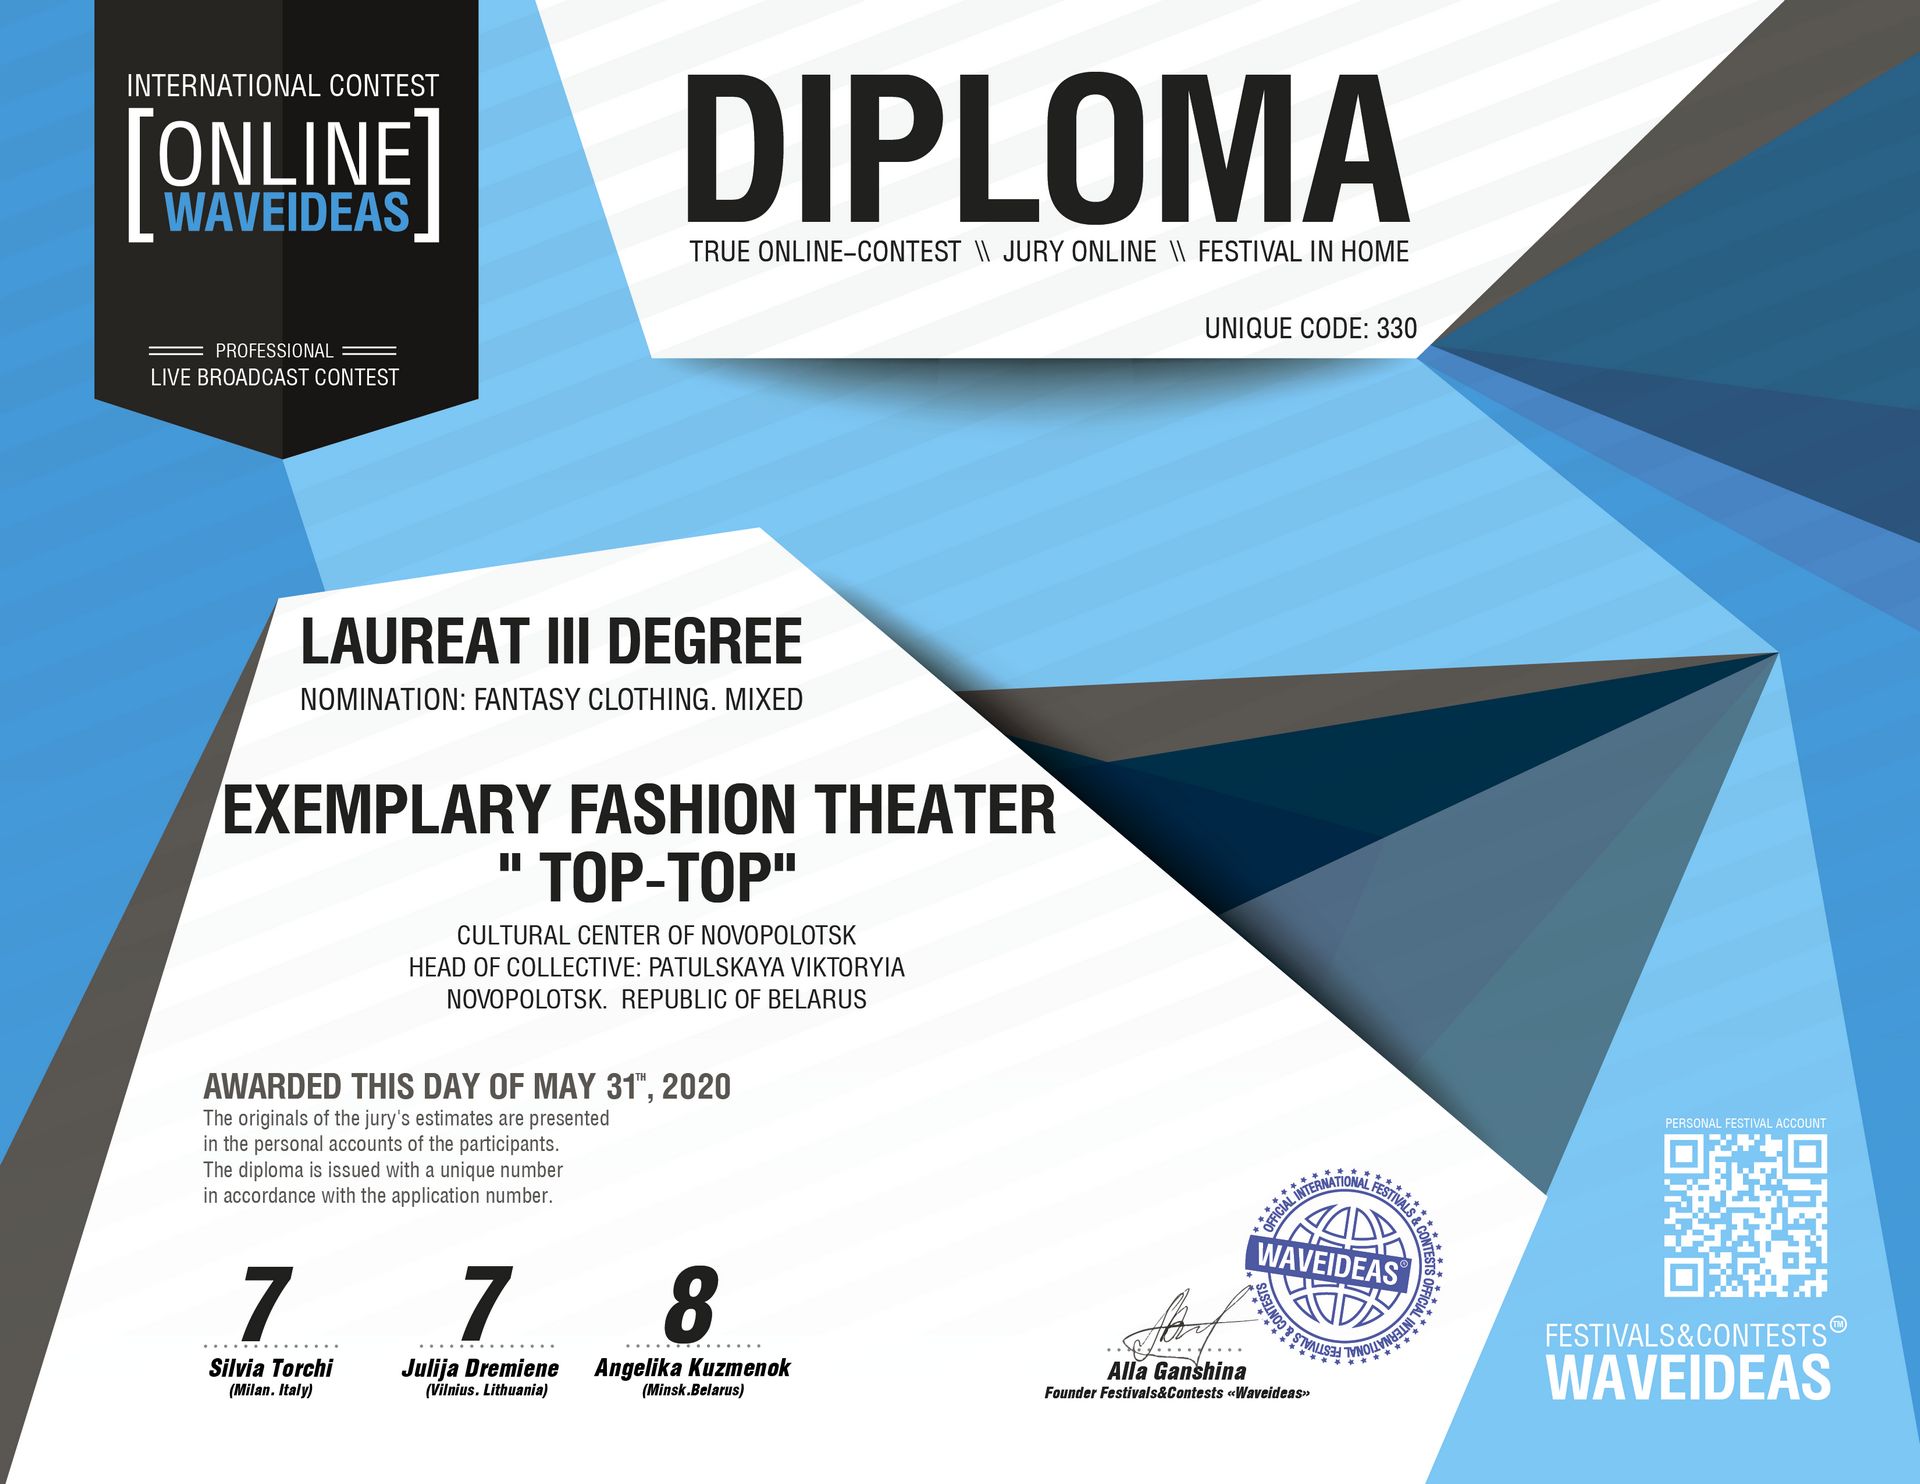 Театр моды «Топ-топ» Центра культуры г. Новополоцка принял участие в международном онлайн-конкурсе «WAVEIDEAS».